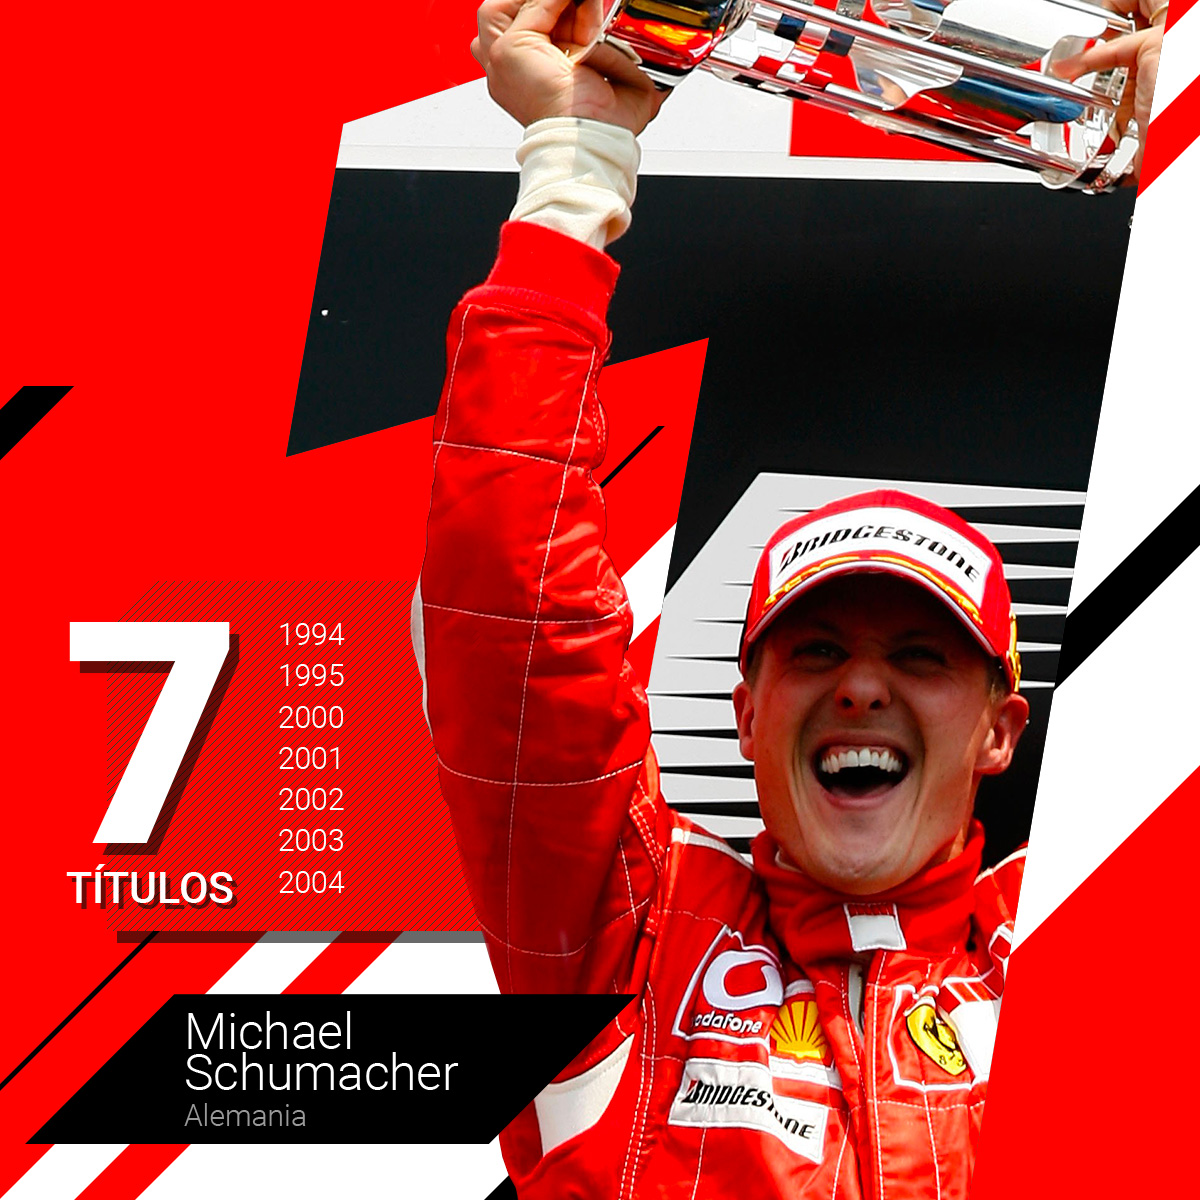 Michael Schumacher en sus años glorias de gloria con la escudería Ferrari